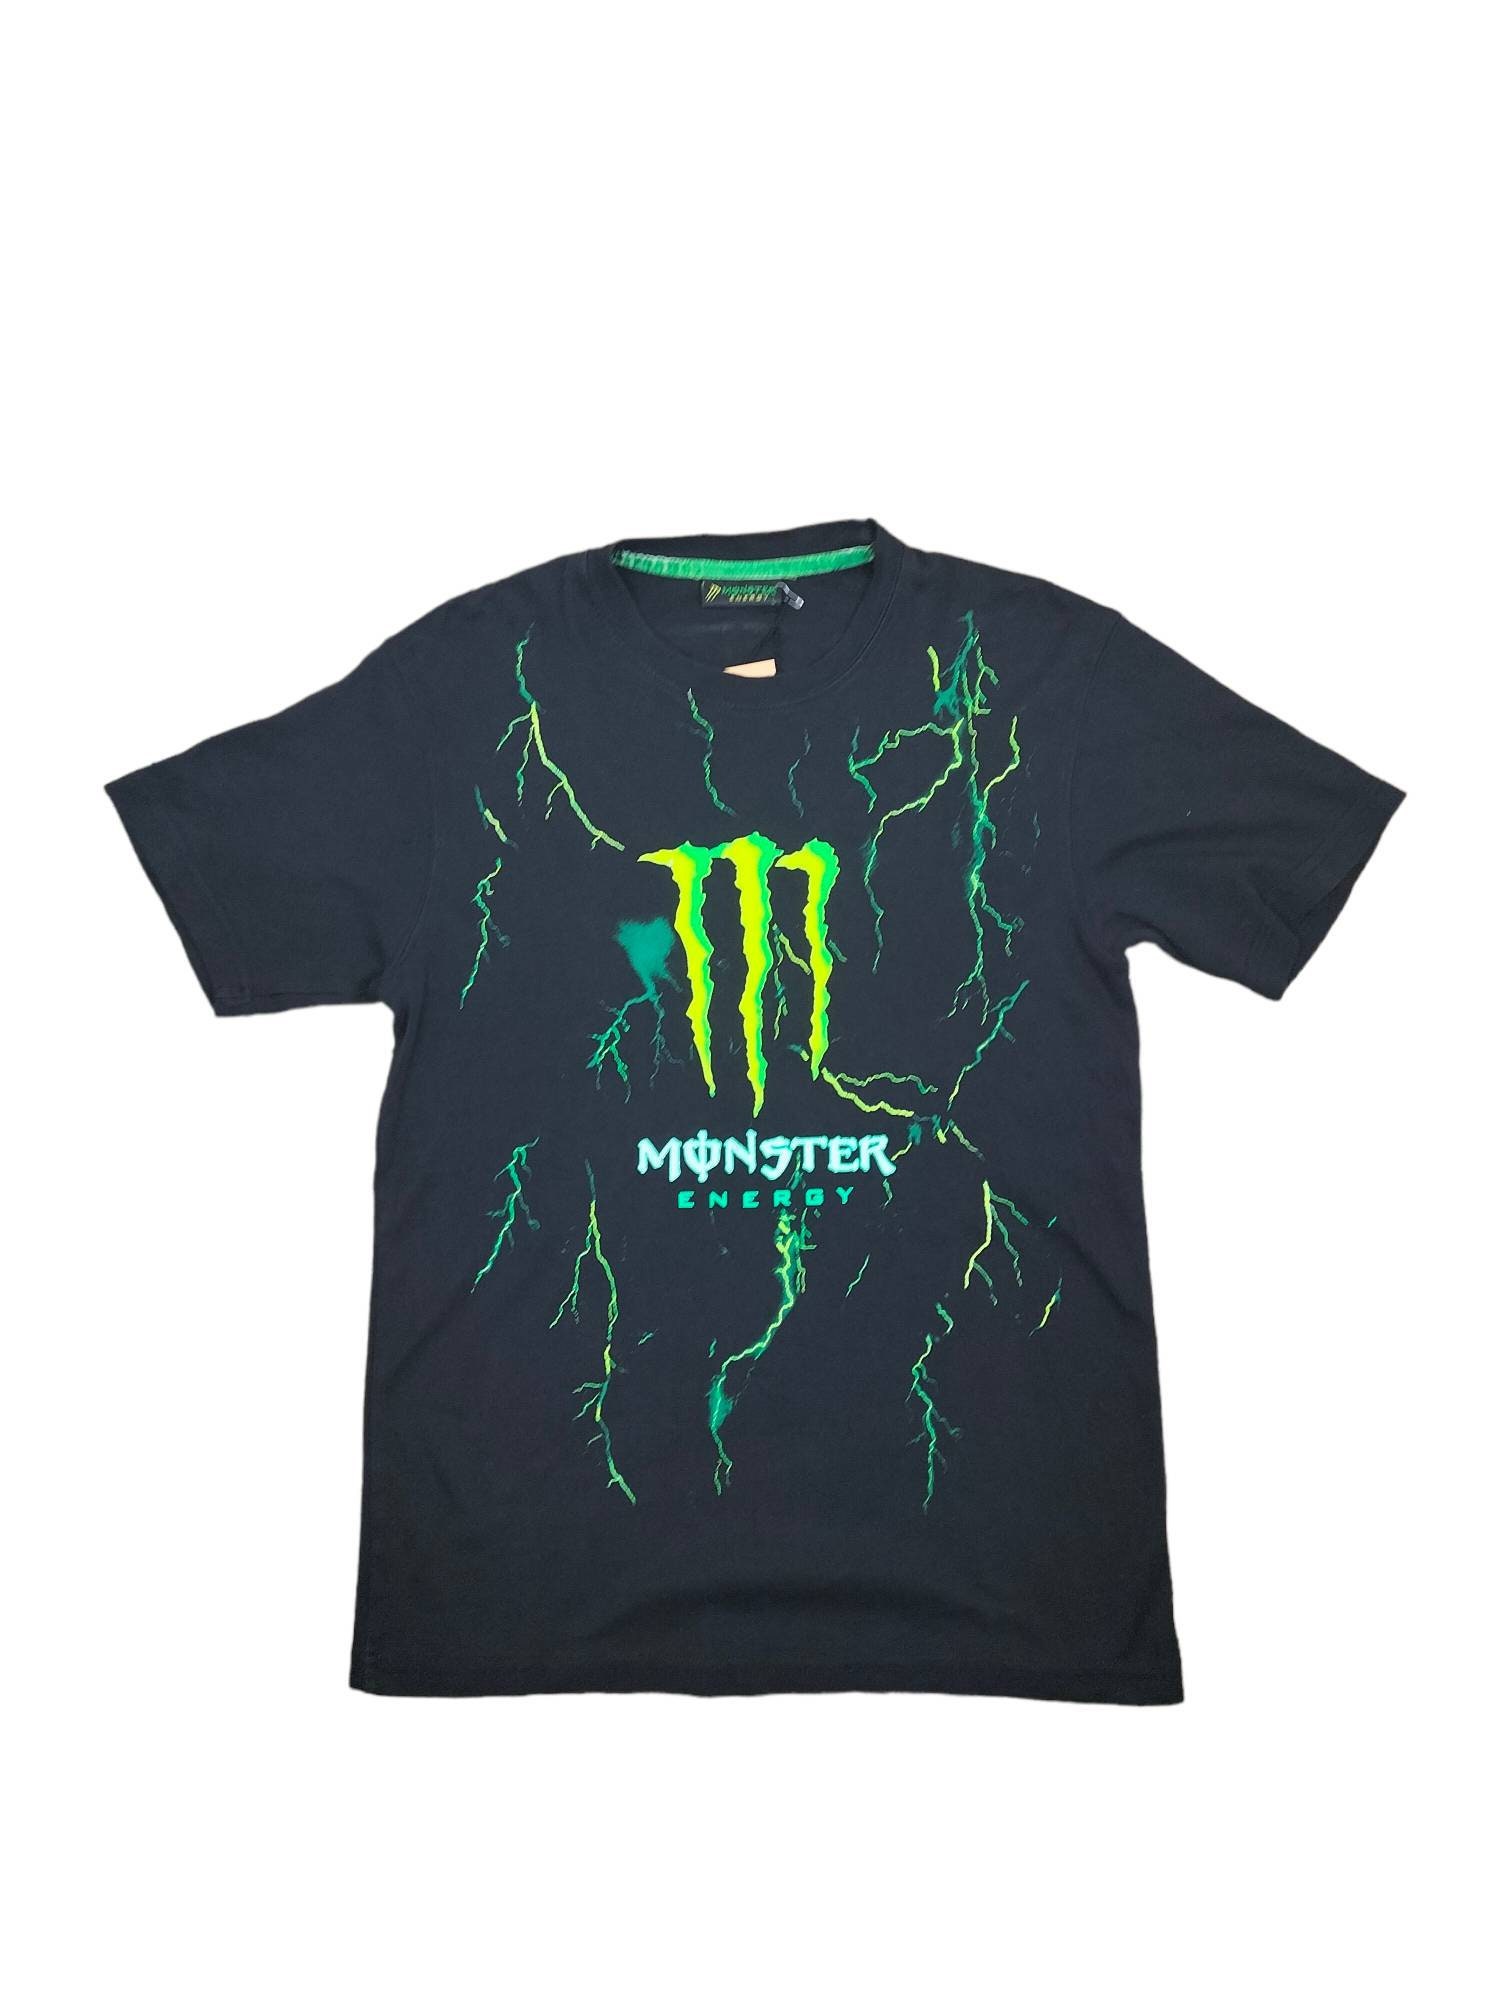 Shirt monster energy for sale  